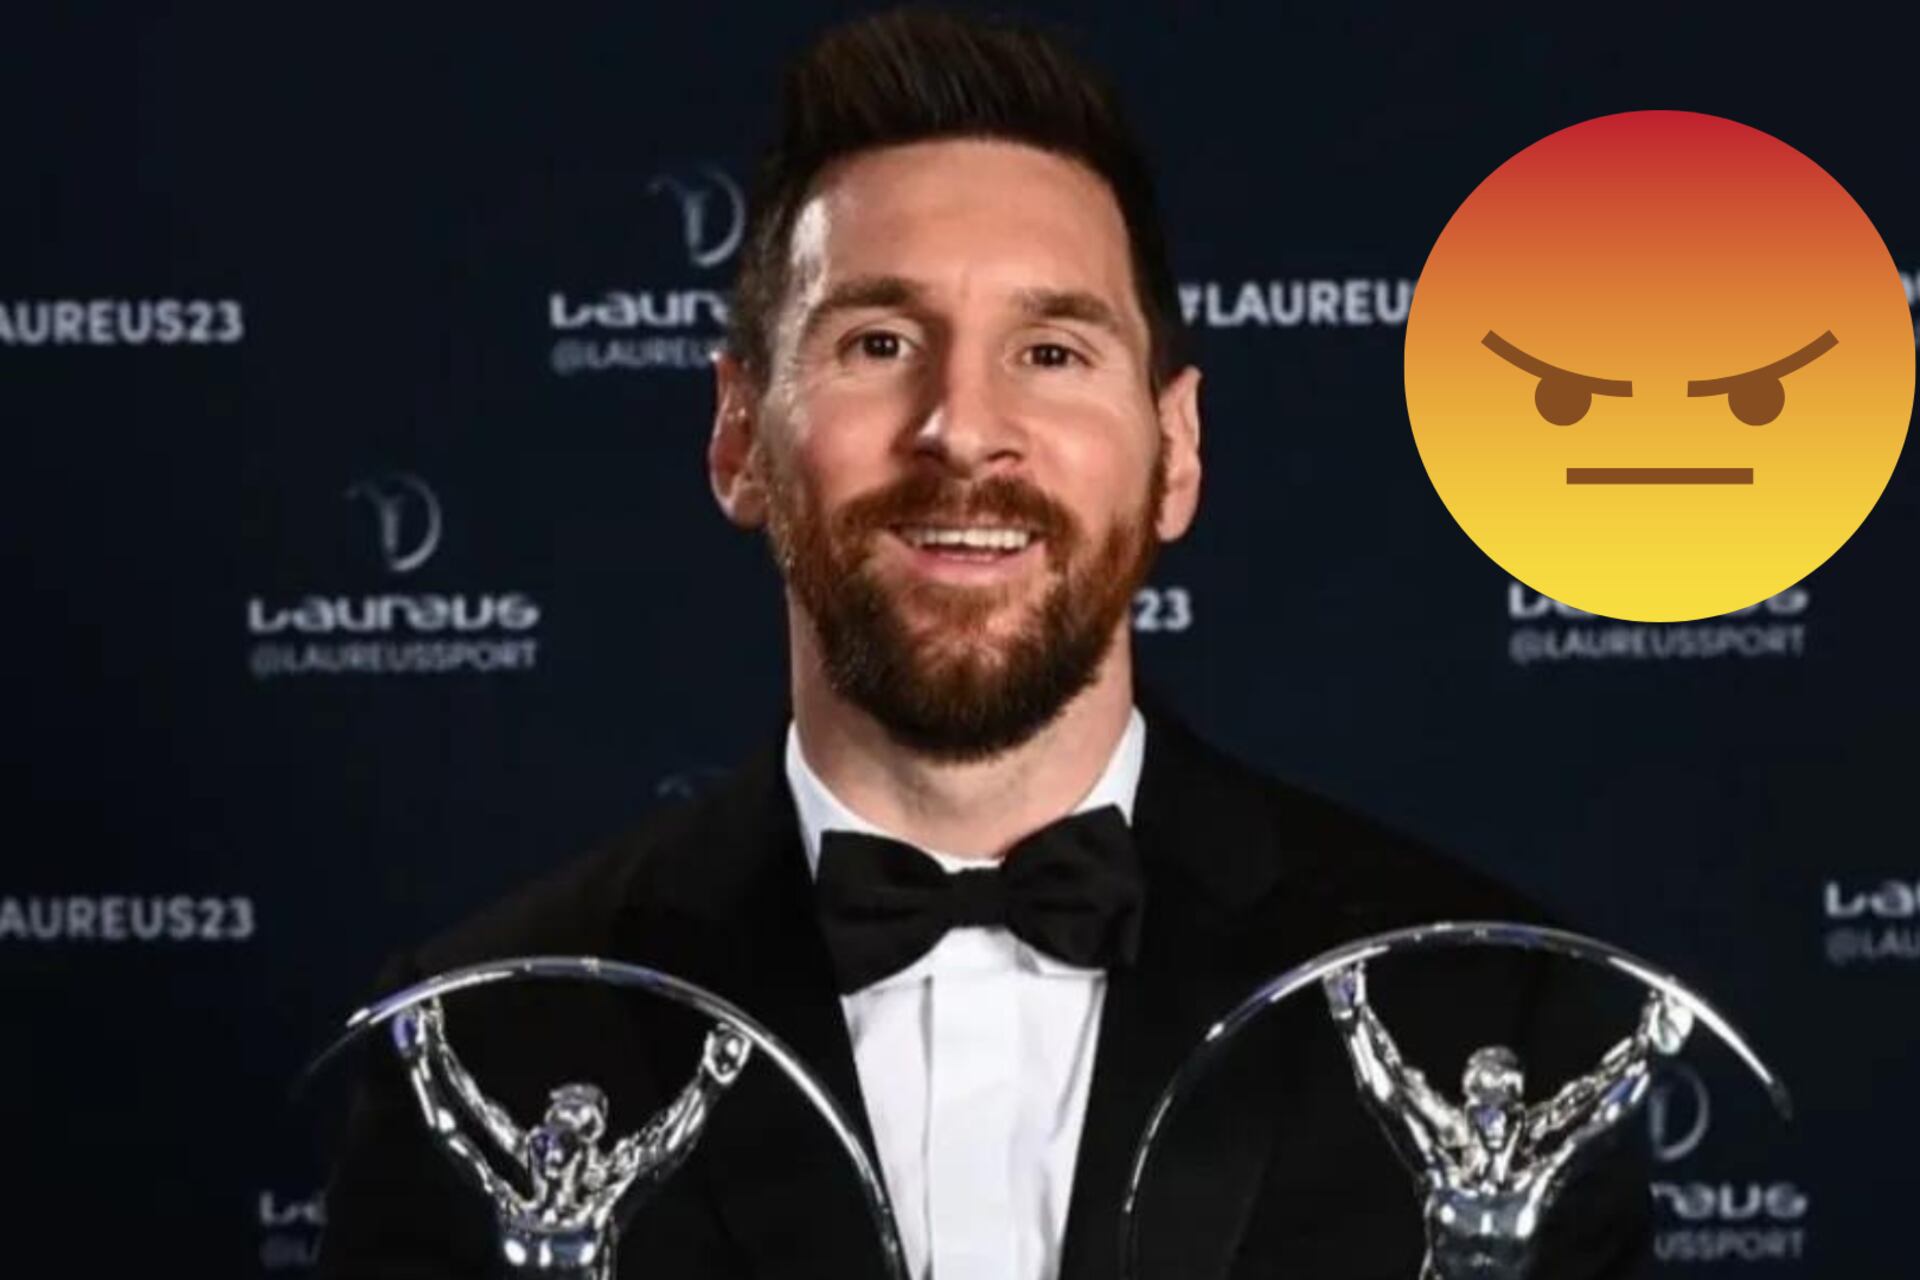 ¿Otro premio más? Messi y una nueva nominación que podría enojar a los hinchas